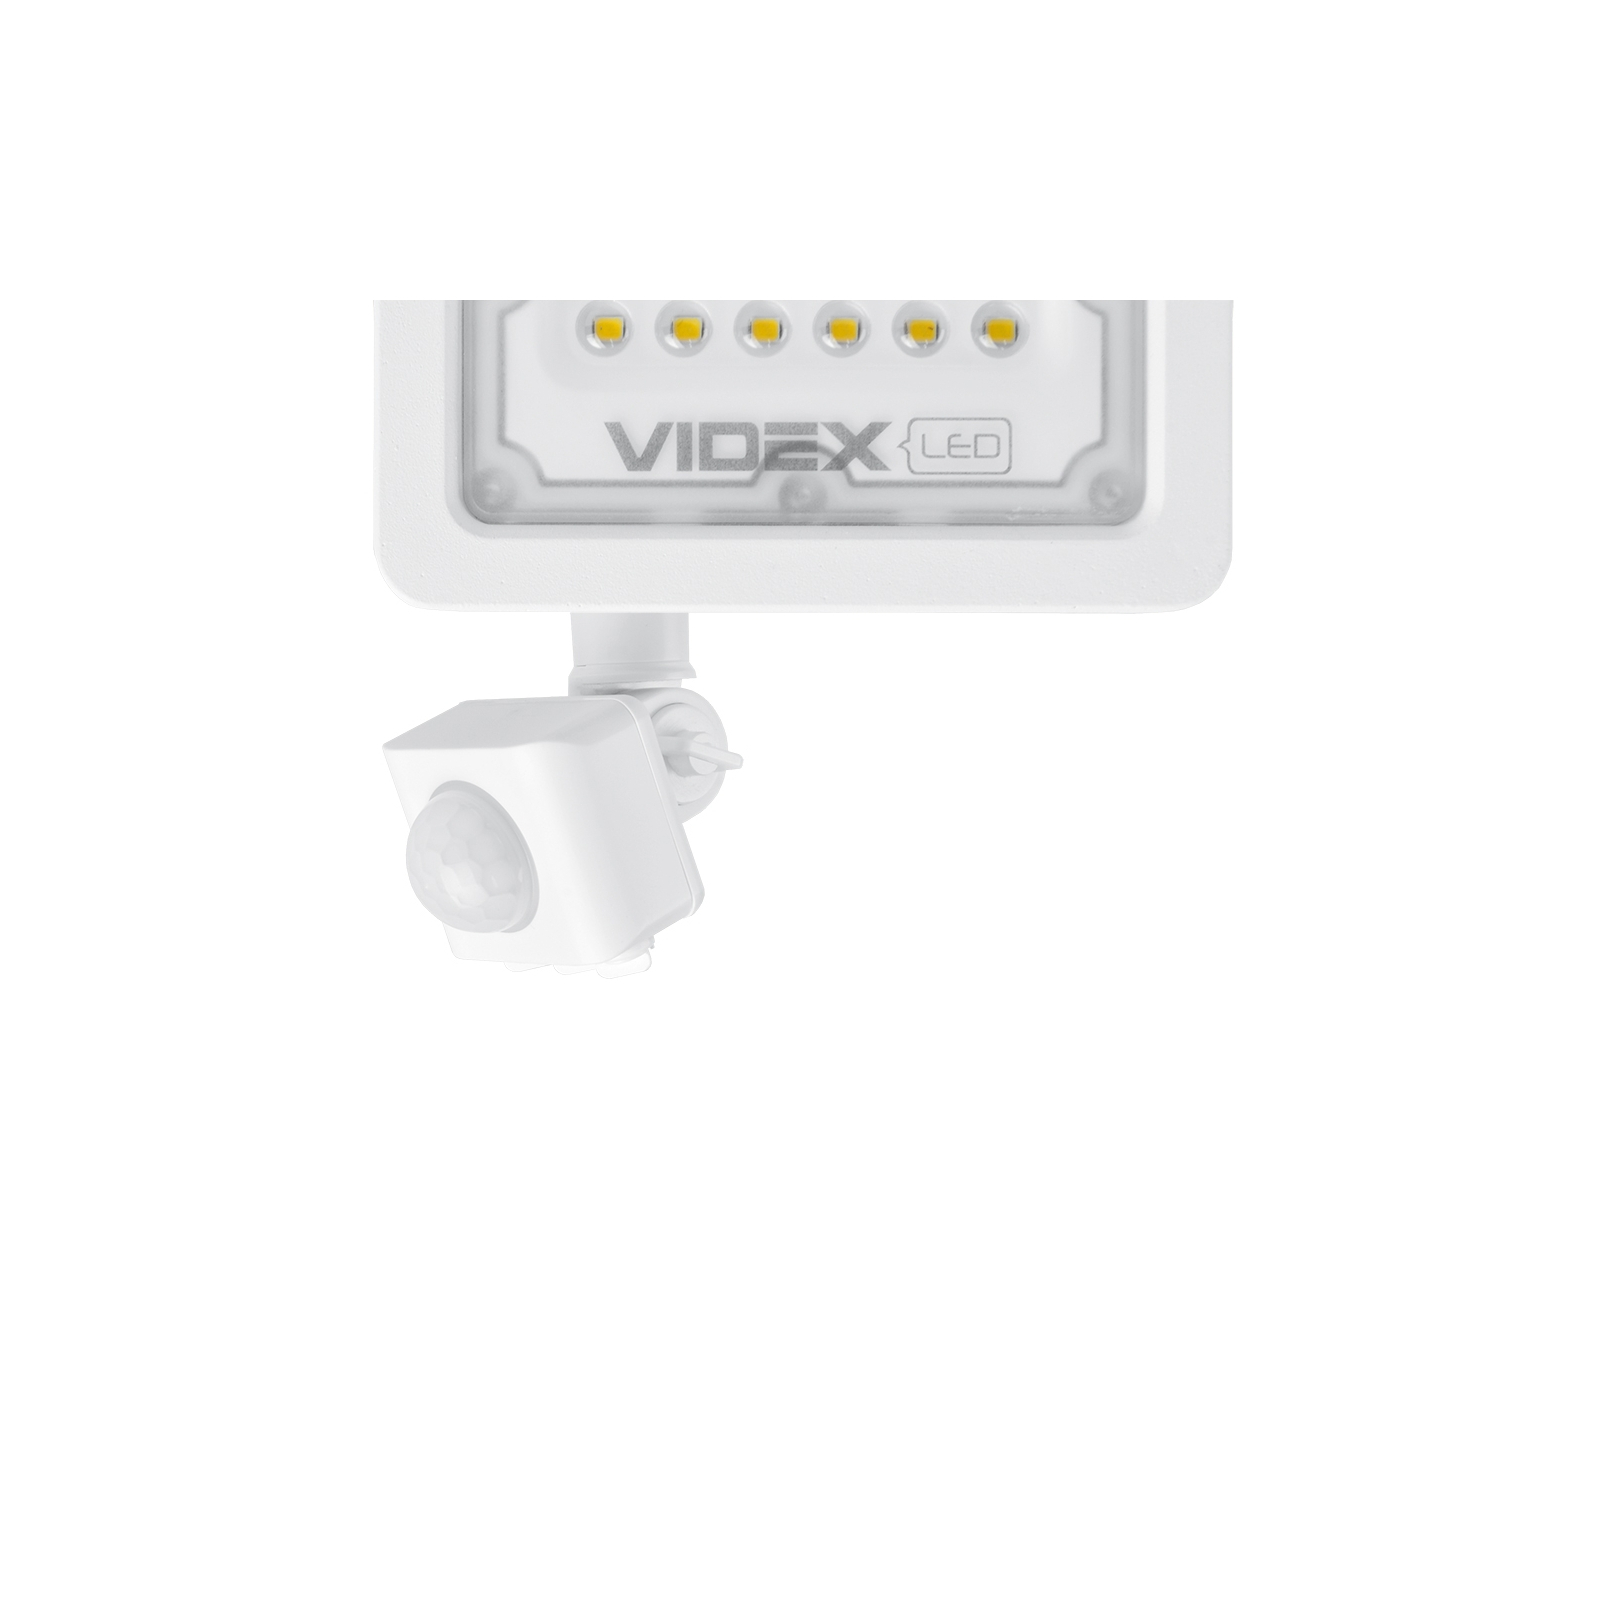 Прожектор Videx LED  10W 5000K с датчиком движения (VL-F2e105W-S) изображение 3